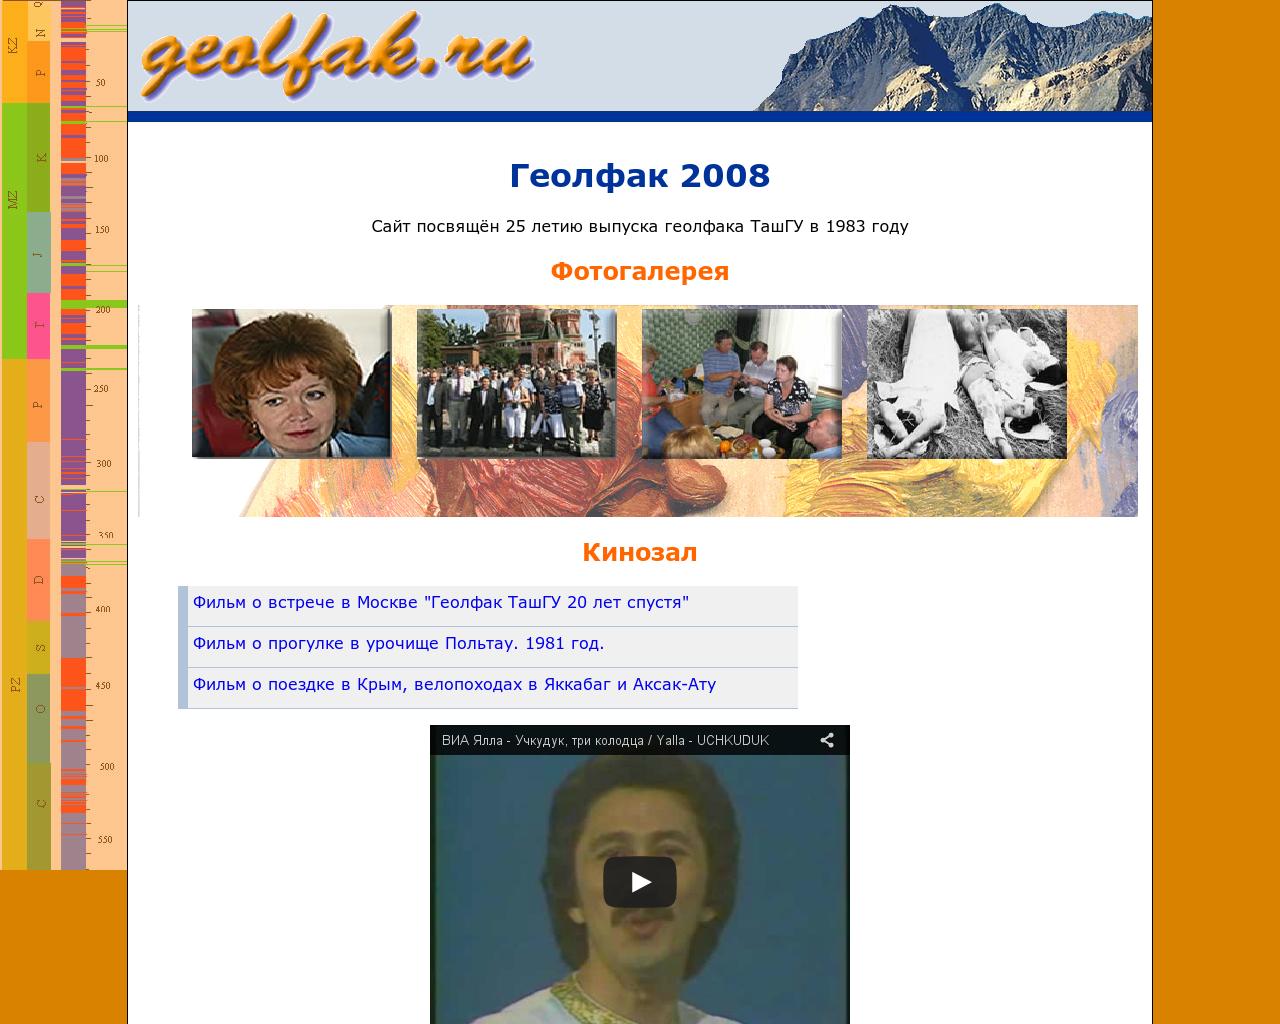 Изображение сайта geolfak.ru в разрешении 1280x1024